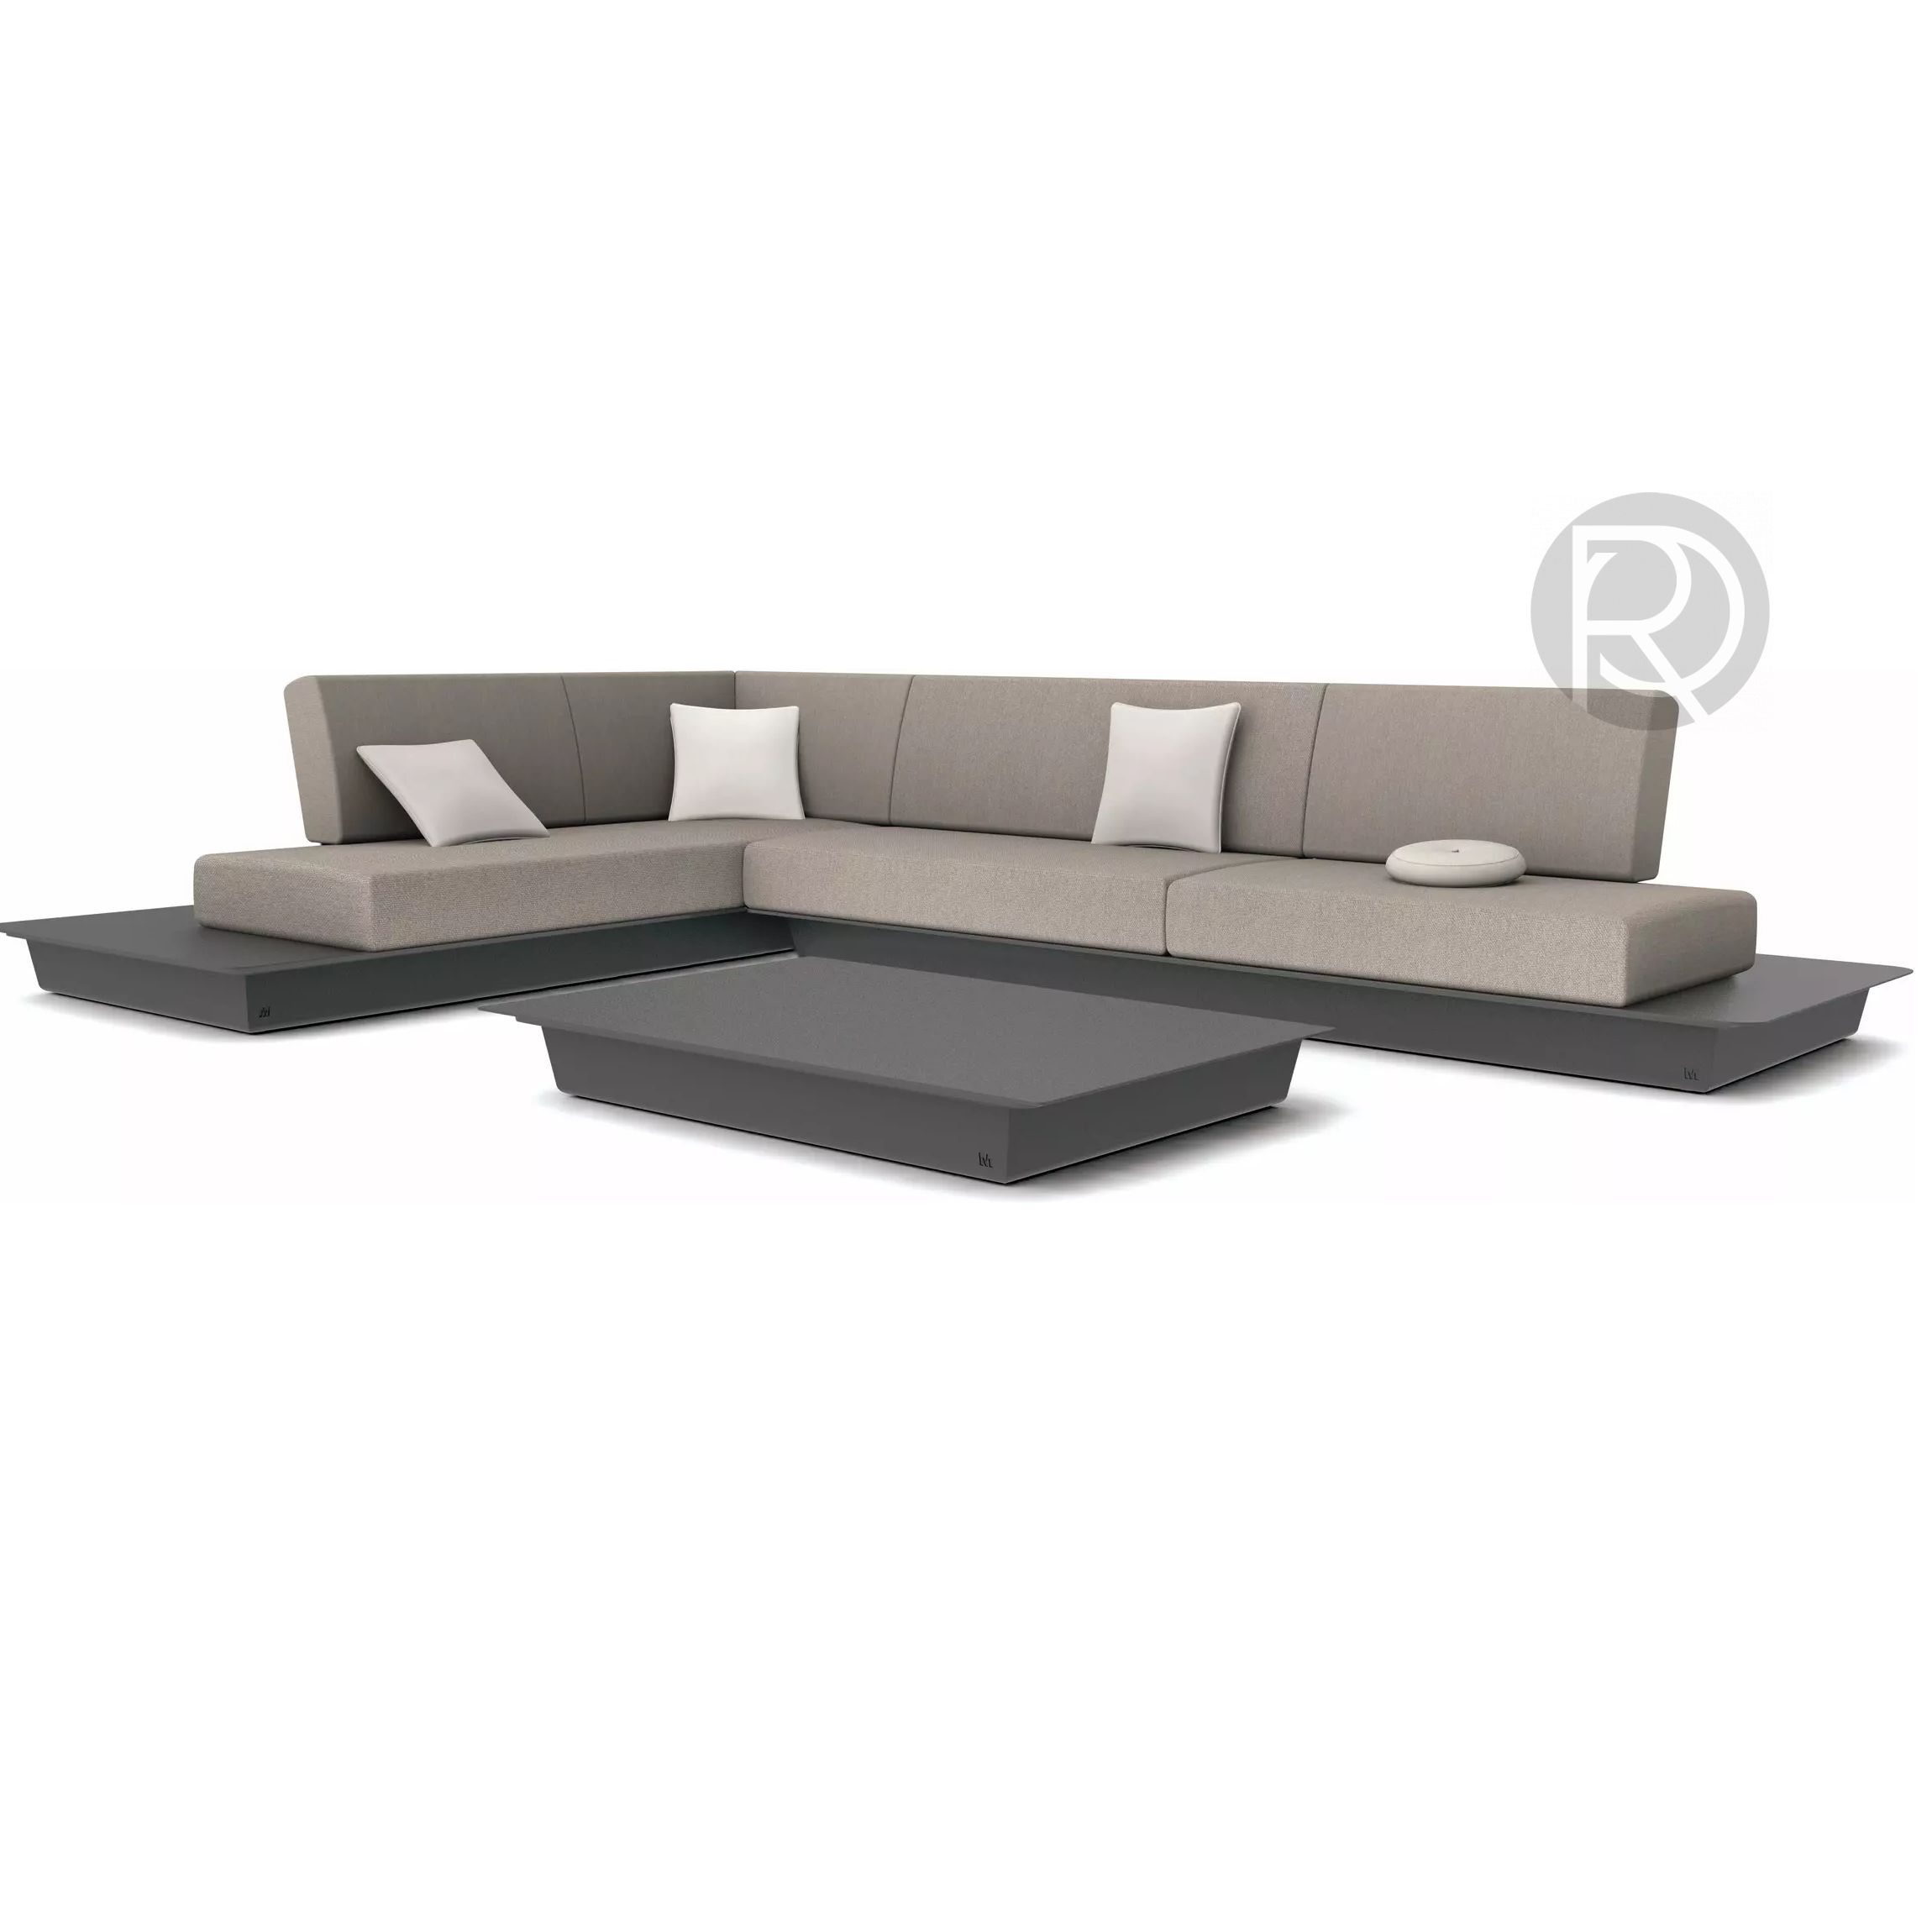 AIR by Manutti furniture set